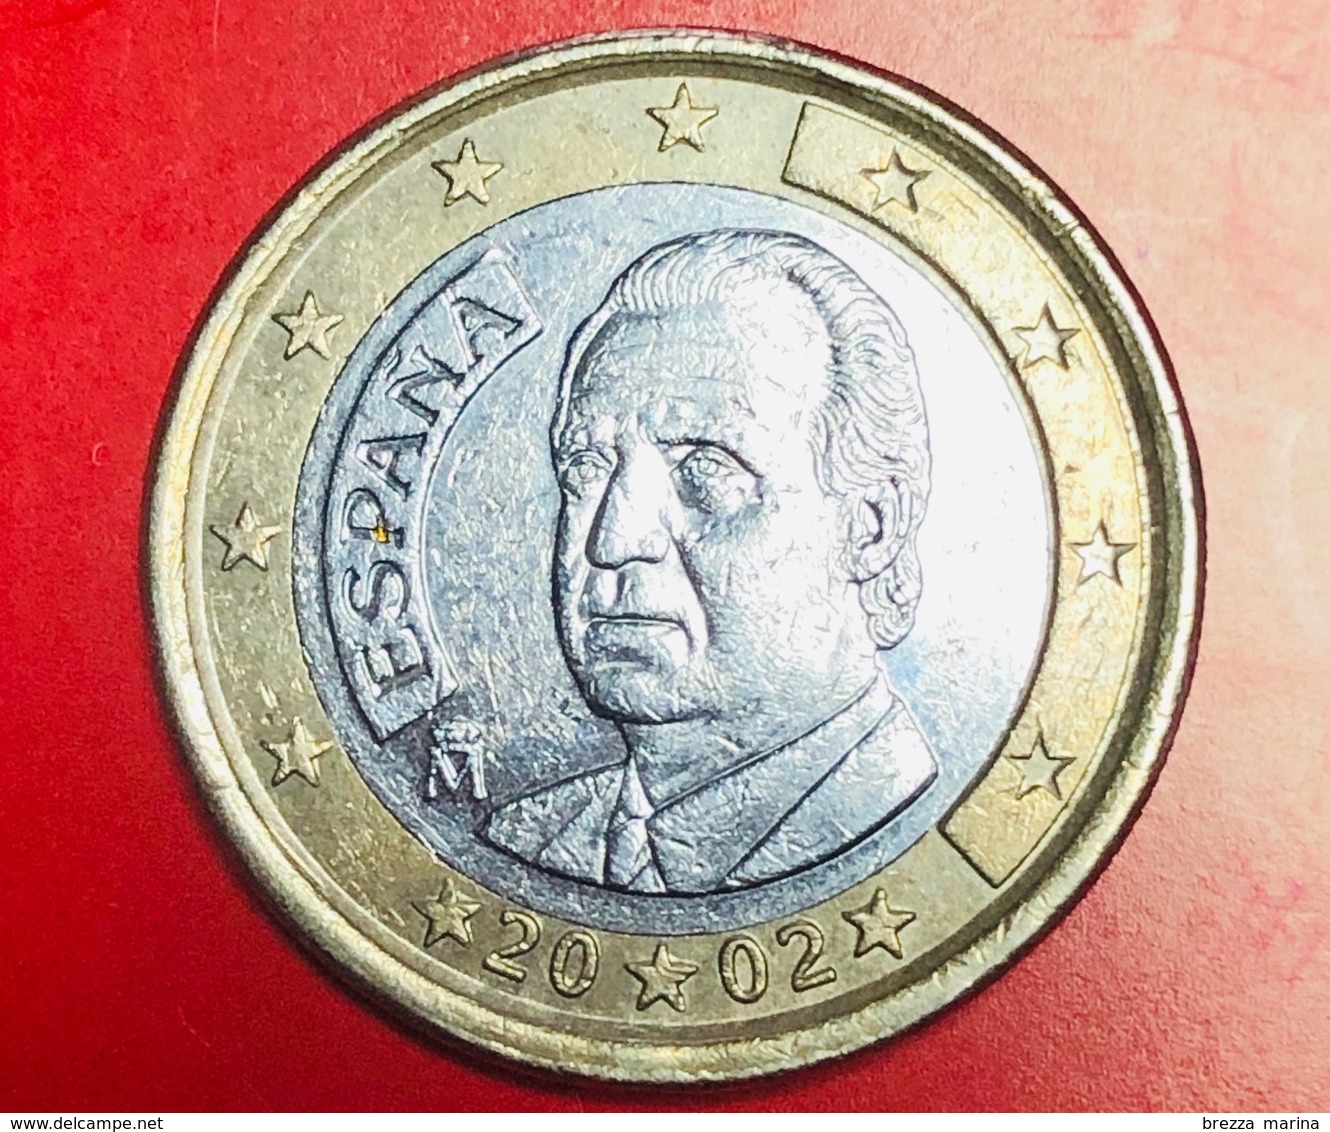 SPAGNA - 2002 - Moneta - Ritratto Di Re Juan Carlos I Di Borbone - Euro - 1.00 - Slovenia